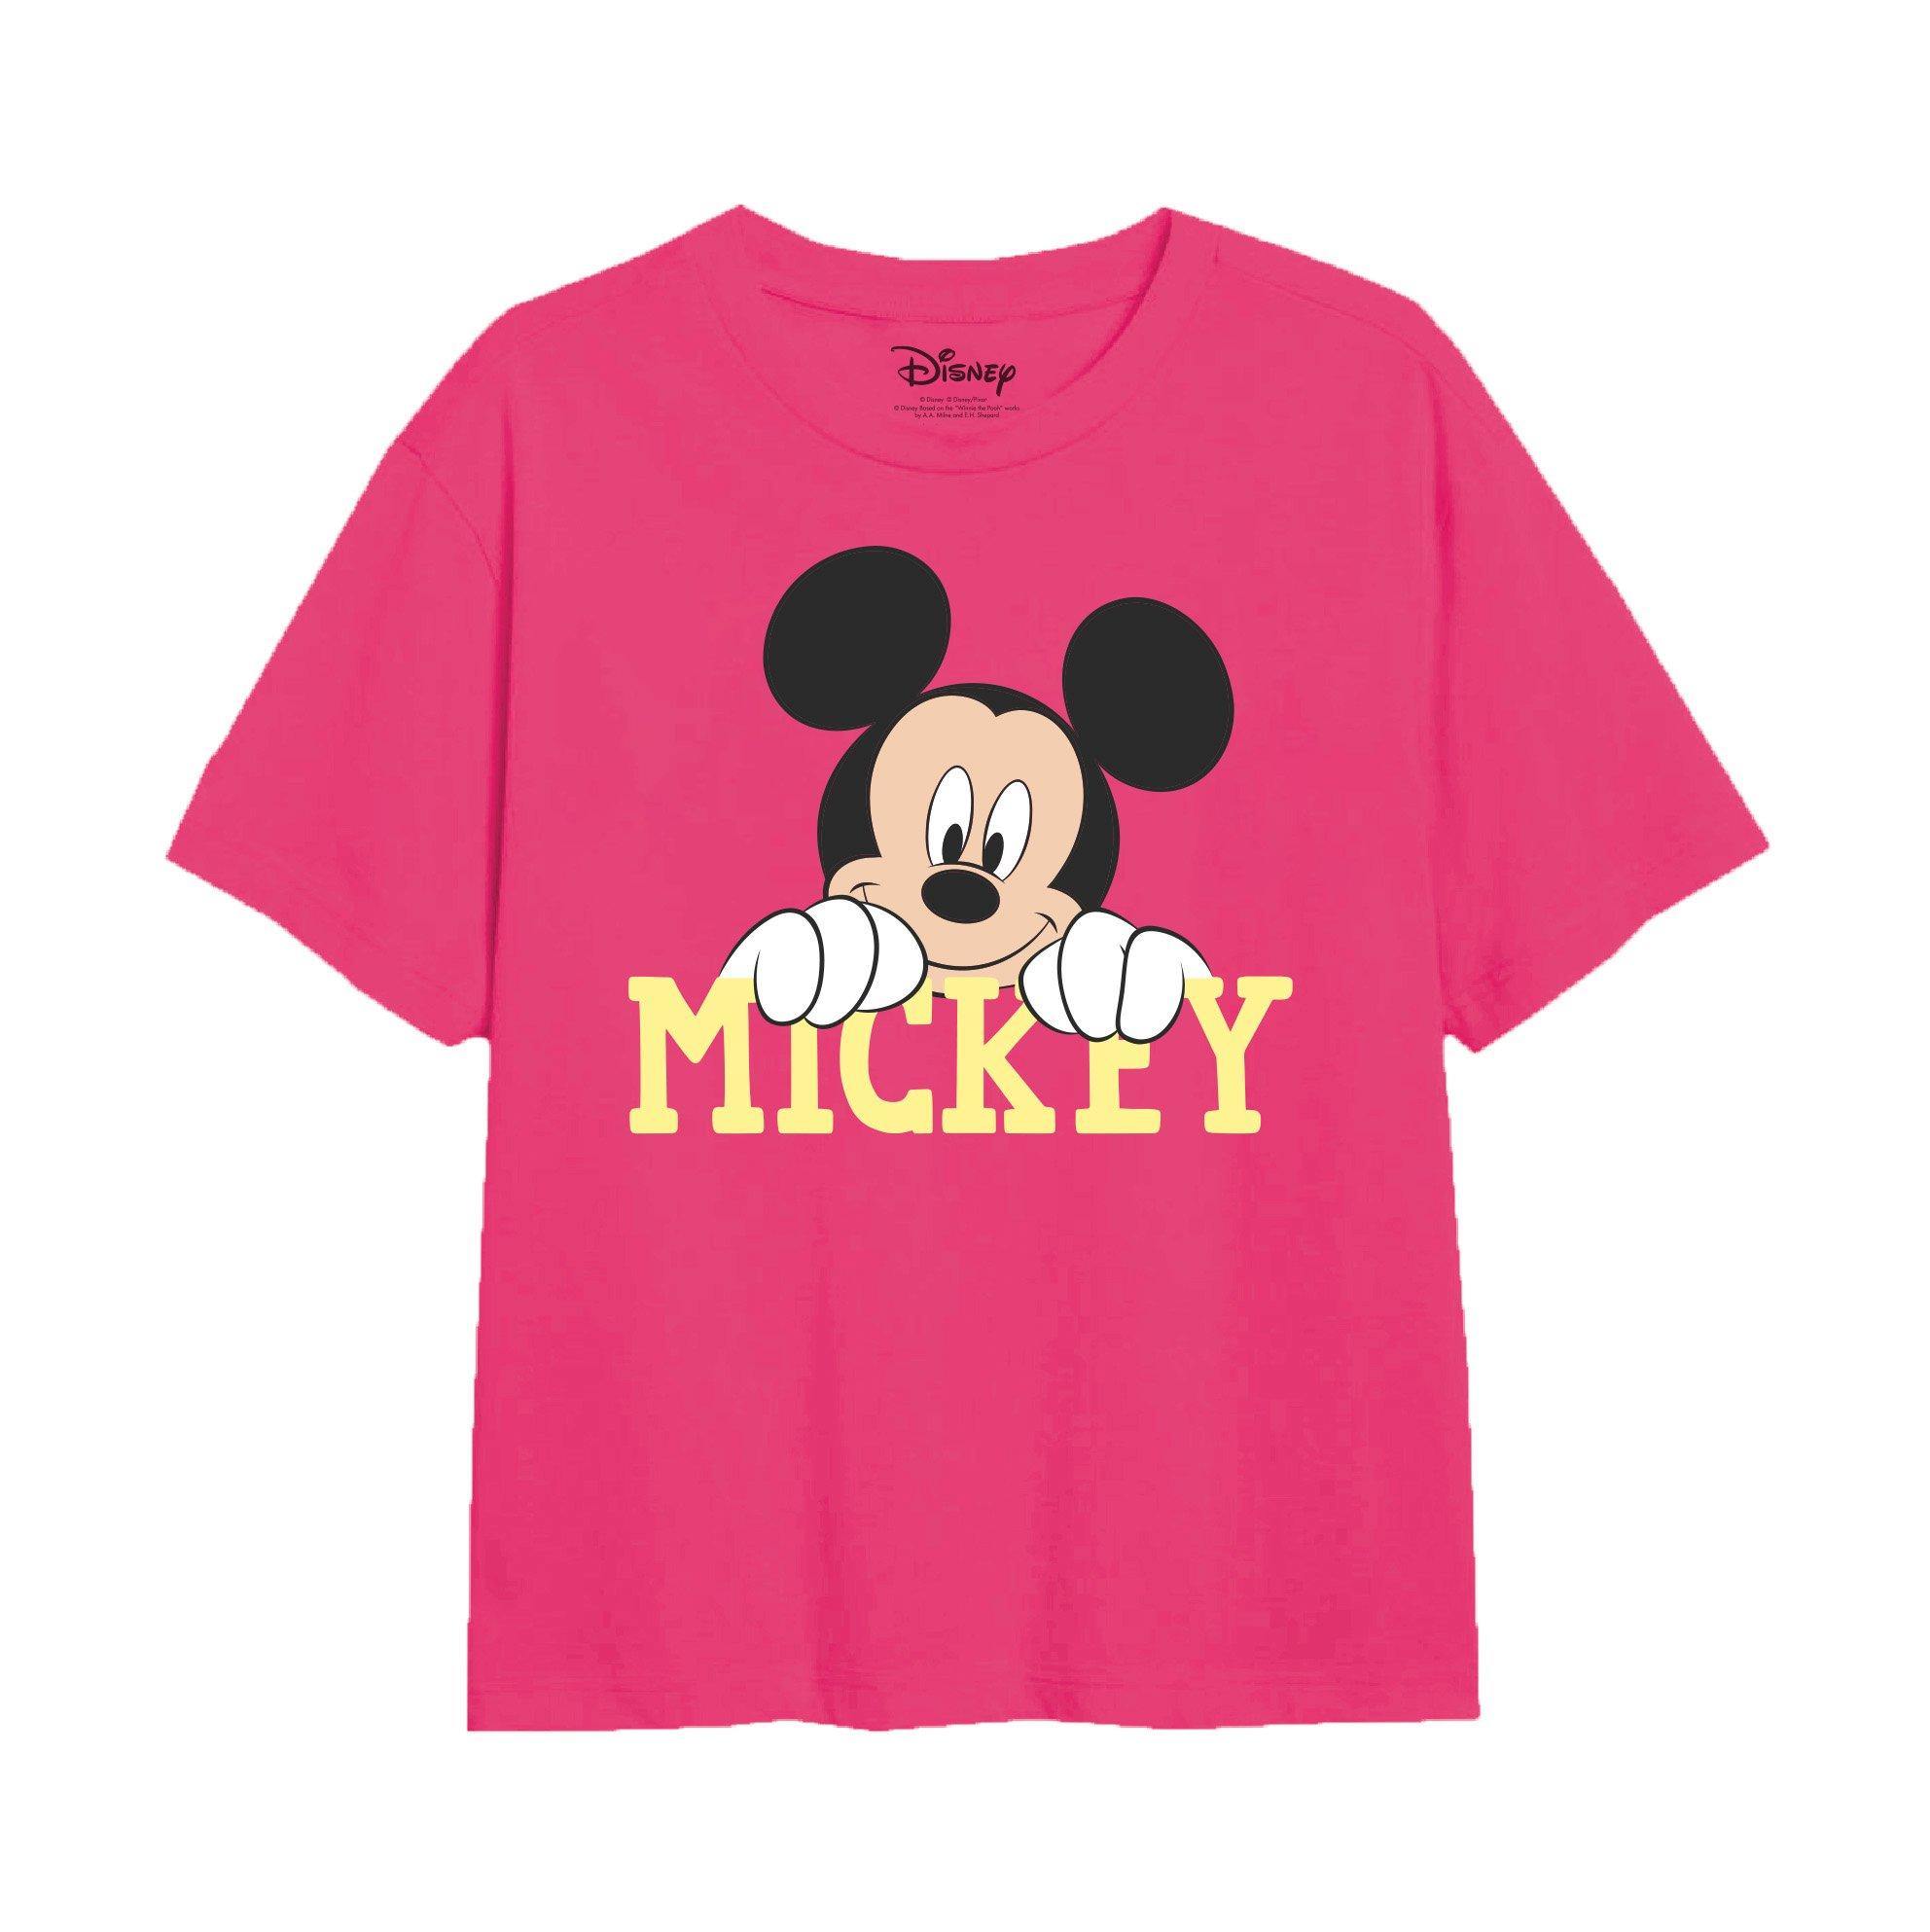 Футболка с милым лицом Микки Мауса Disney, розовый фотографии